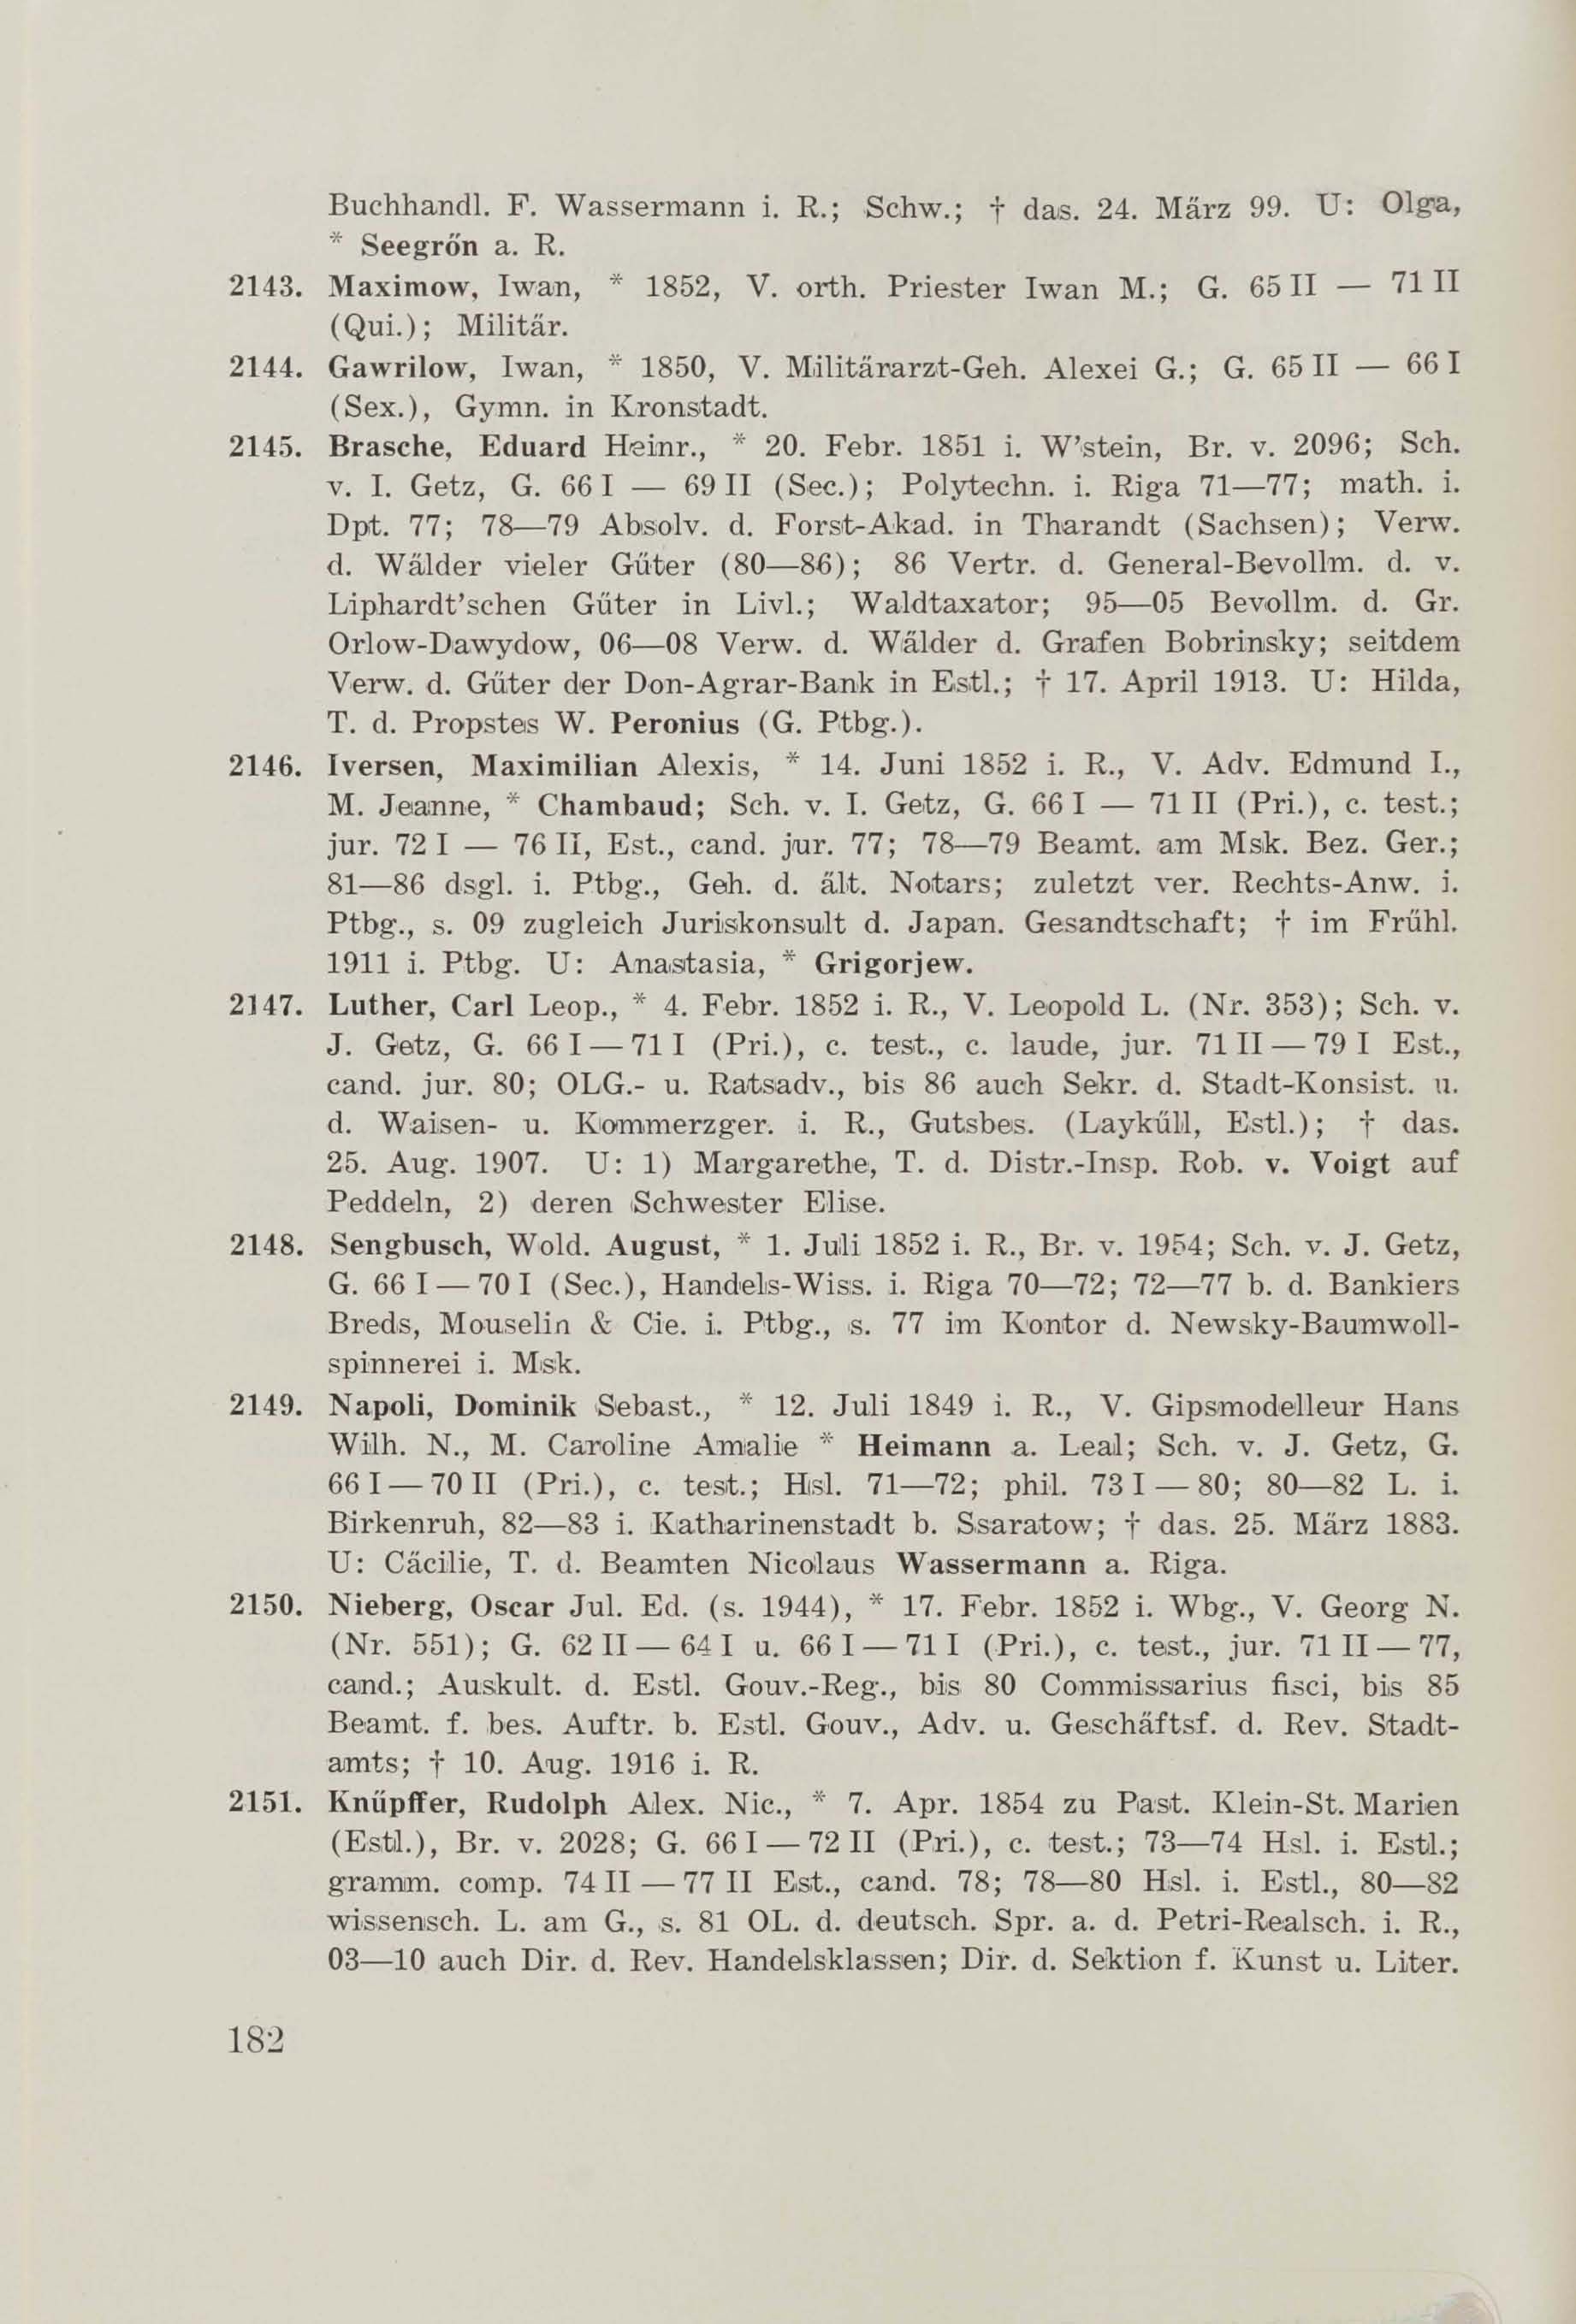 Schüler-Verzeichnis des Revalschen Gouvernements-Gymnasiums 1805–1890 (1931) | 192. (182) Main body of text